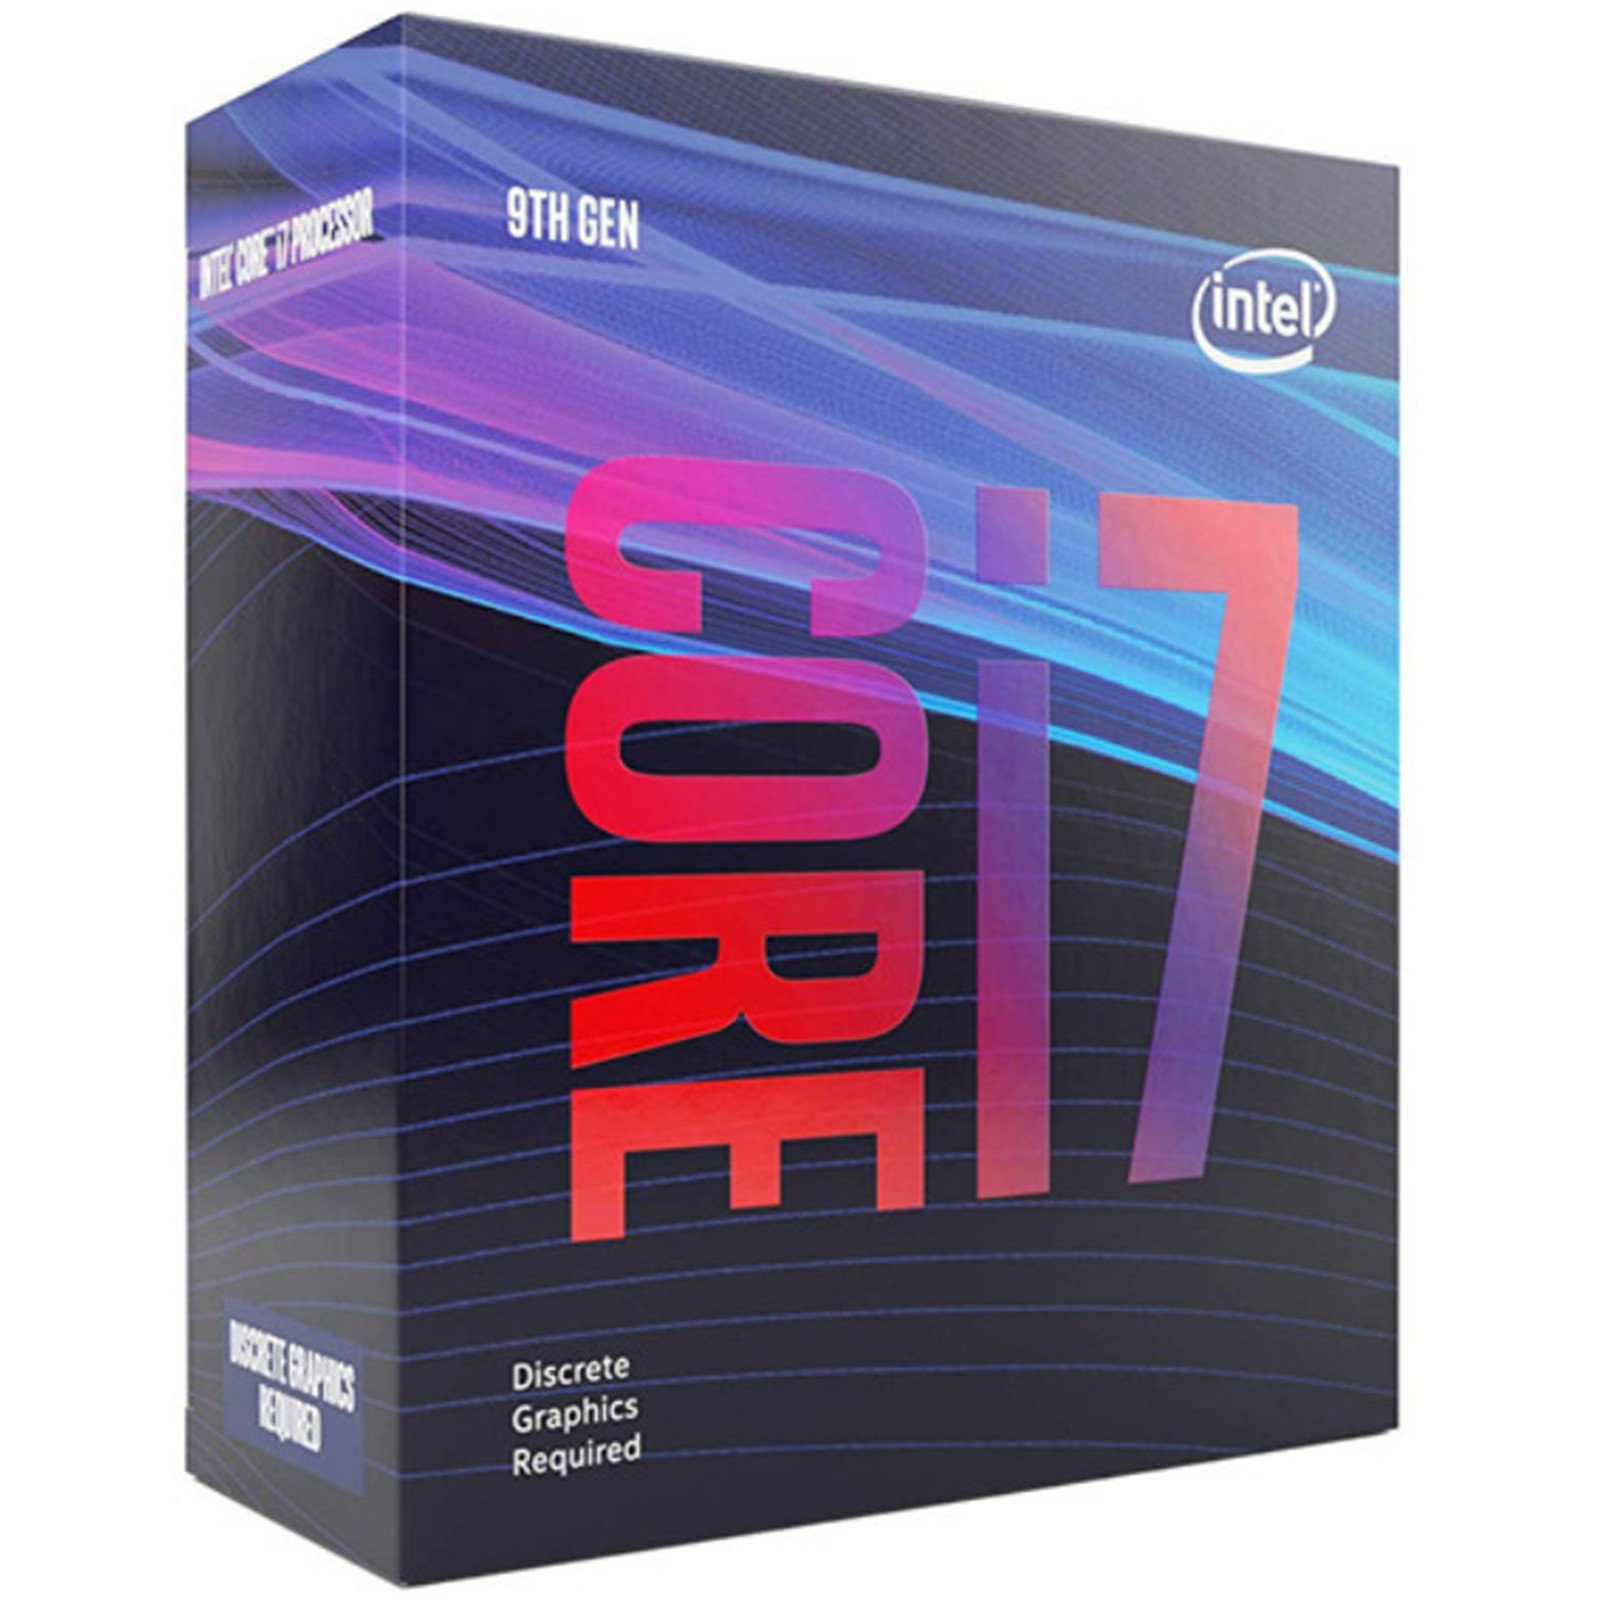 Intel core i7 9700f